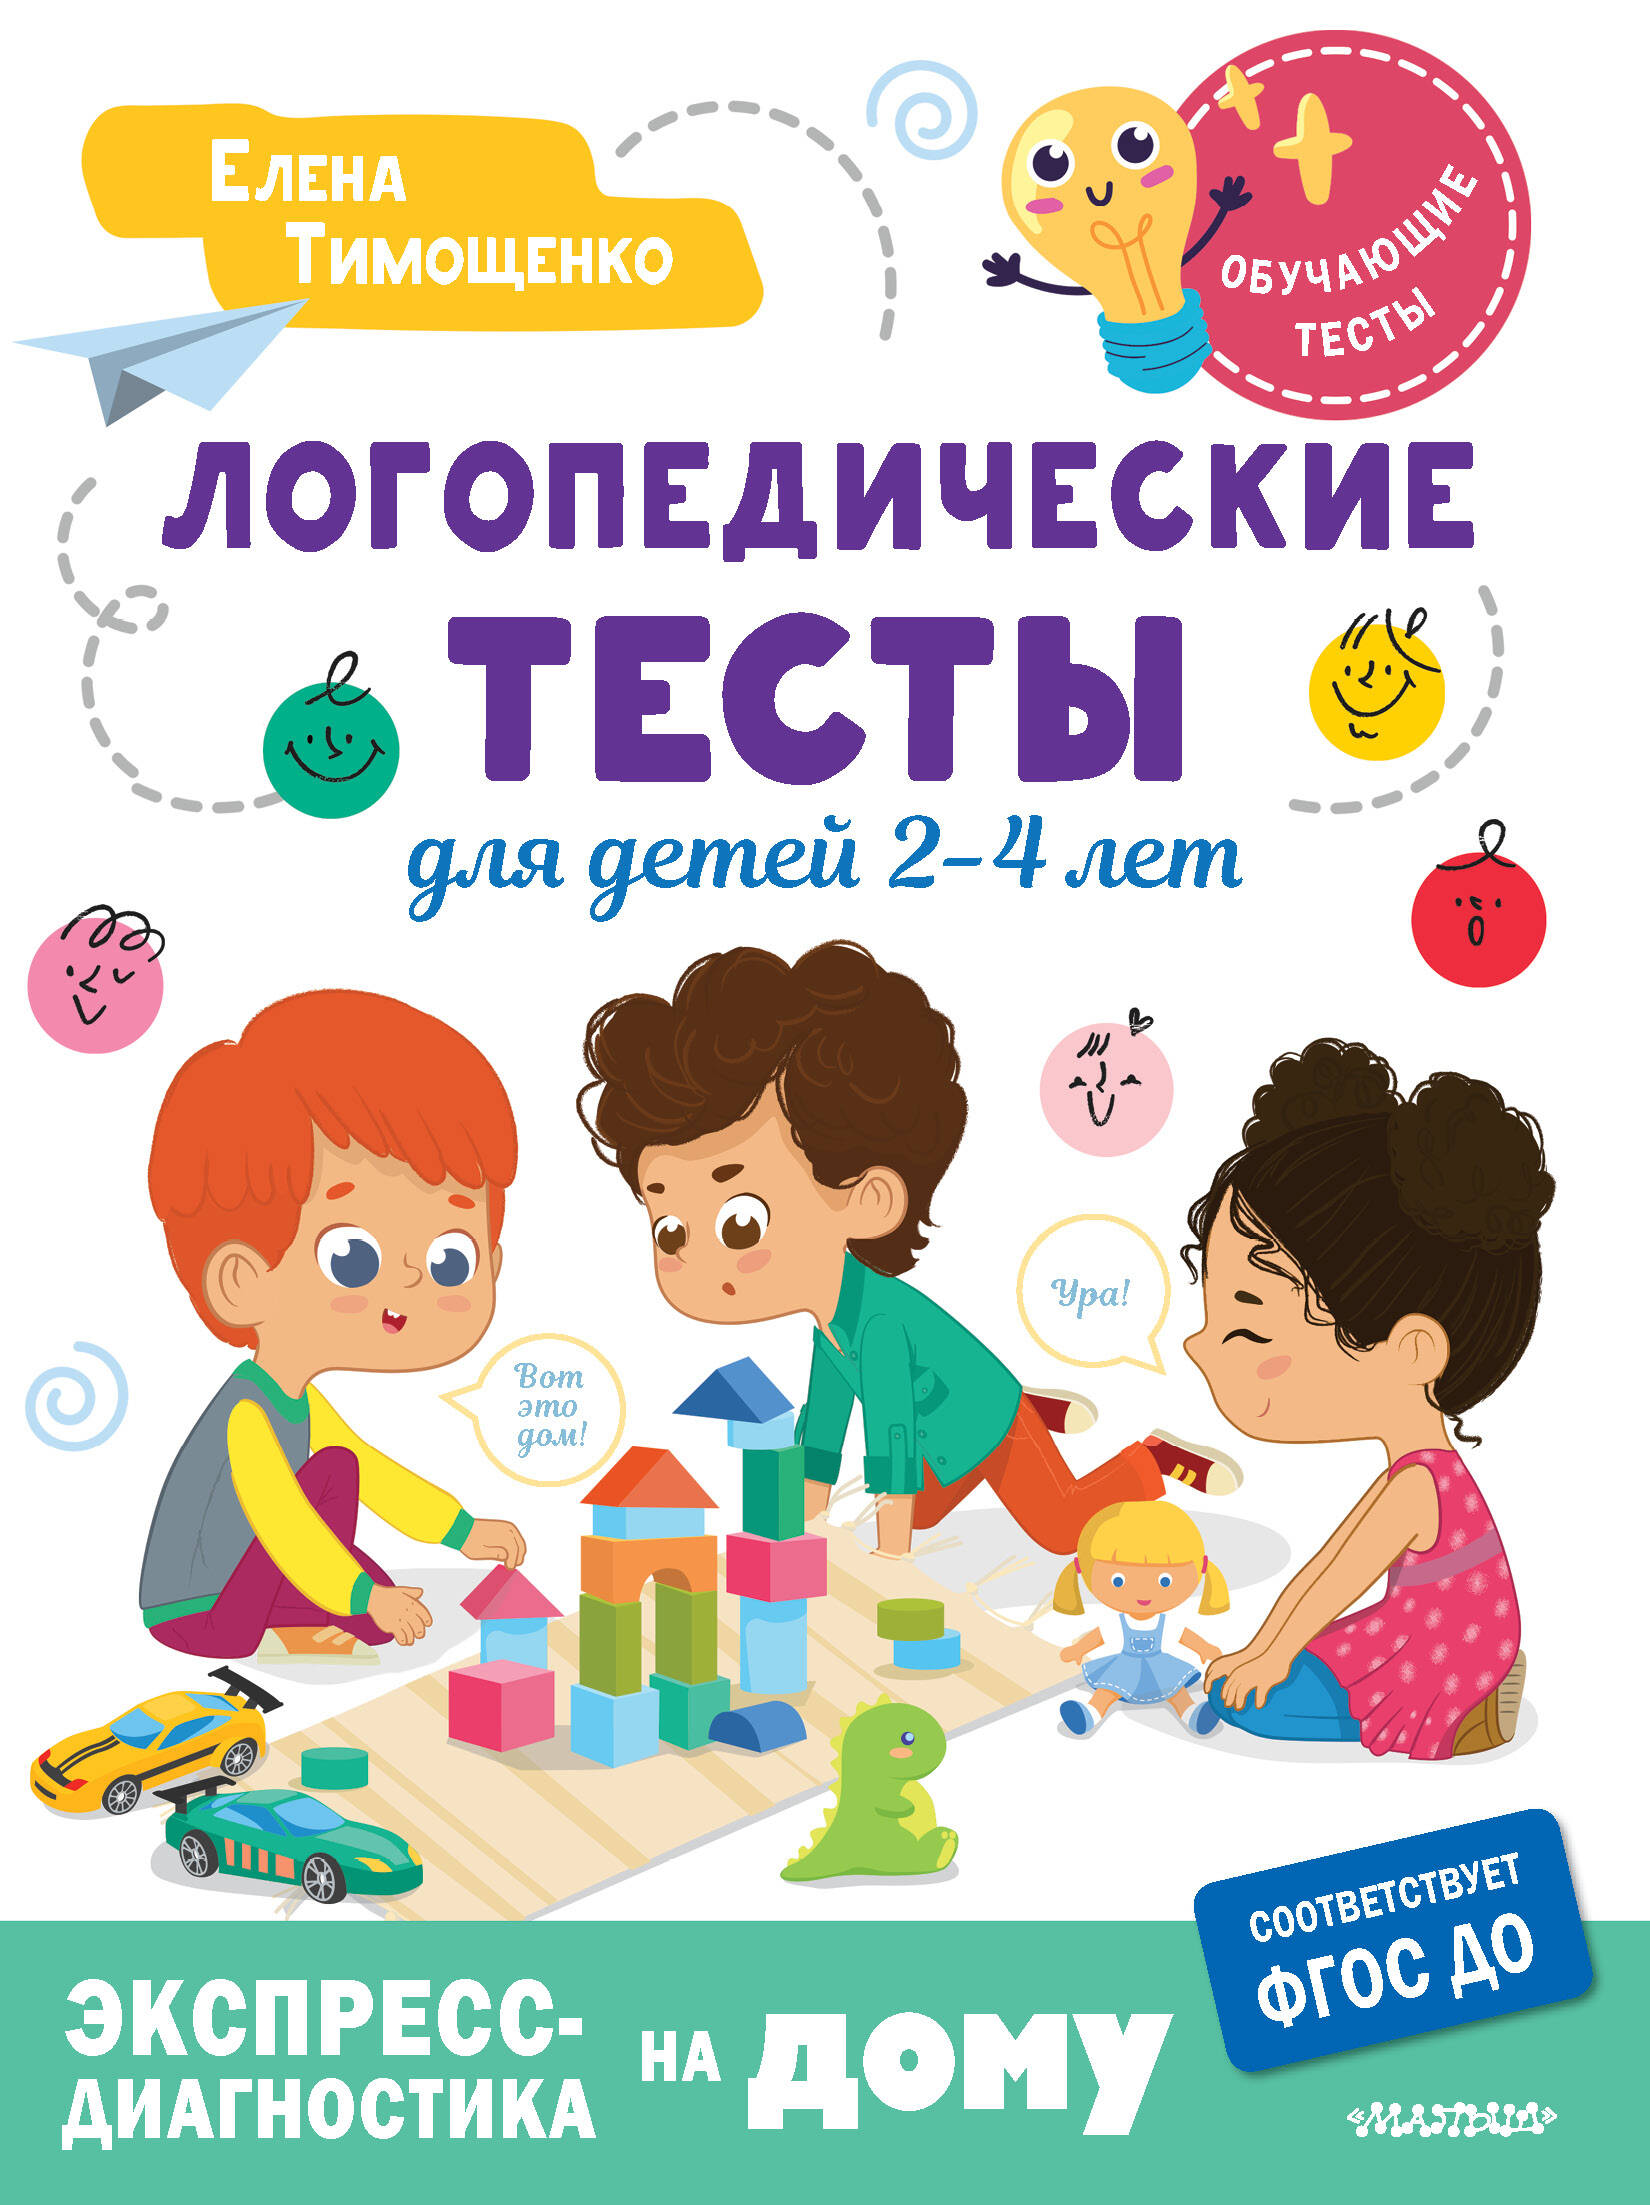 Тимощенко Елена Геннадьевна Логопедические тесты для детей 2-4 лет - страница 0